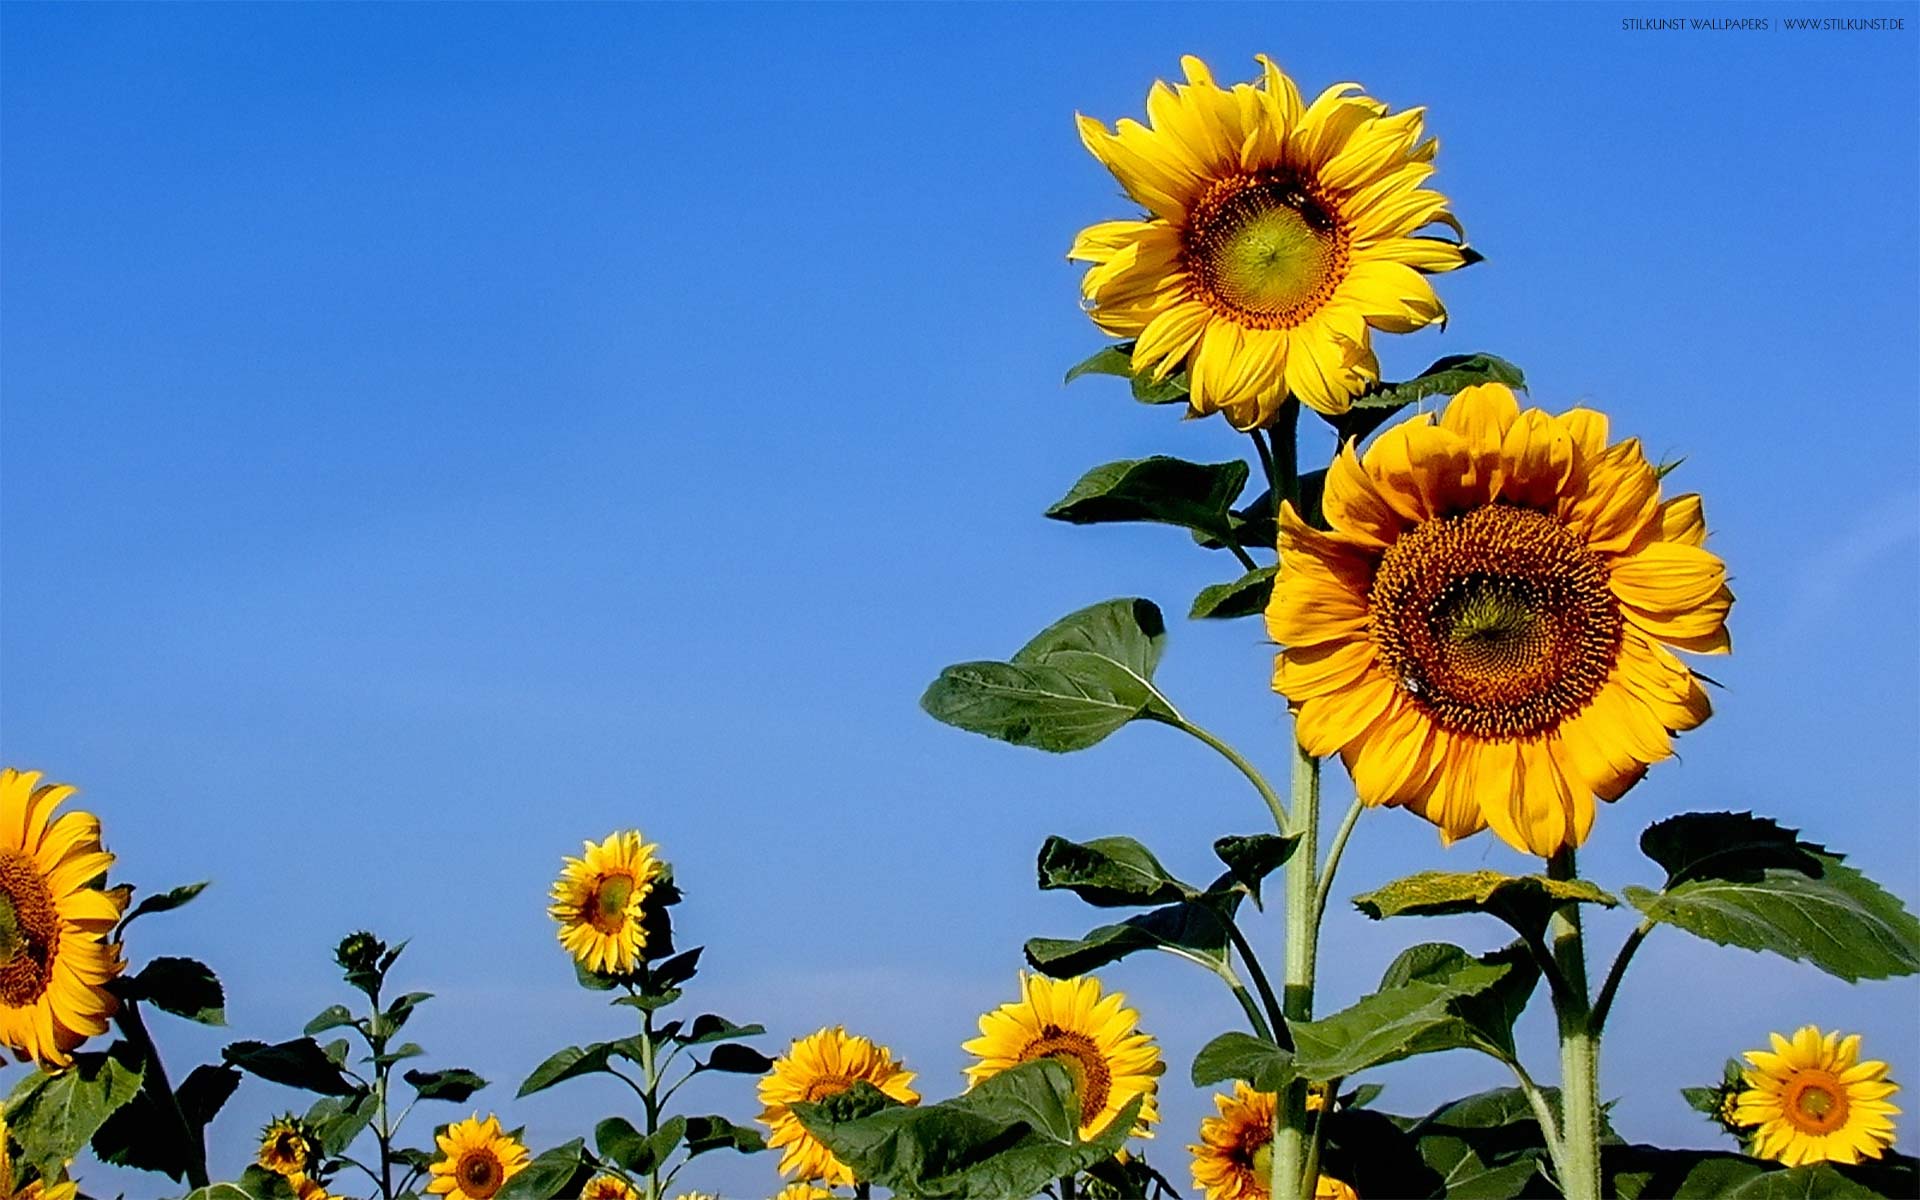 Sonnenblumen auf dem Feld | 1920 x 1200px | Bild: ©by Sabrina | Reiner | www.stilkunst.de | Lizenz: CC BY-SA